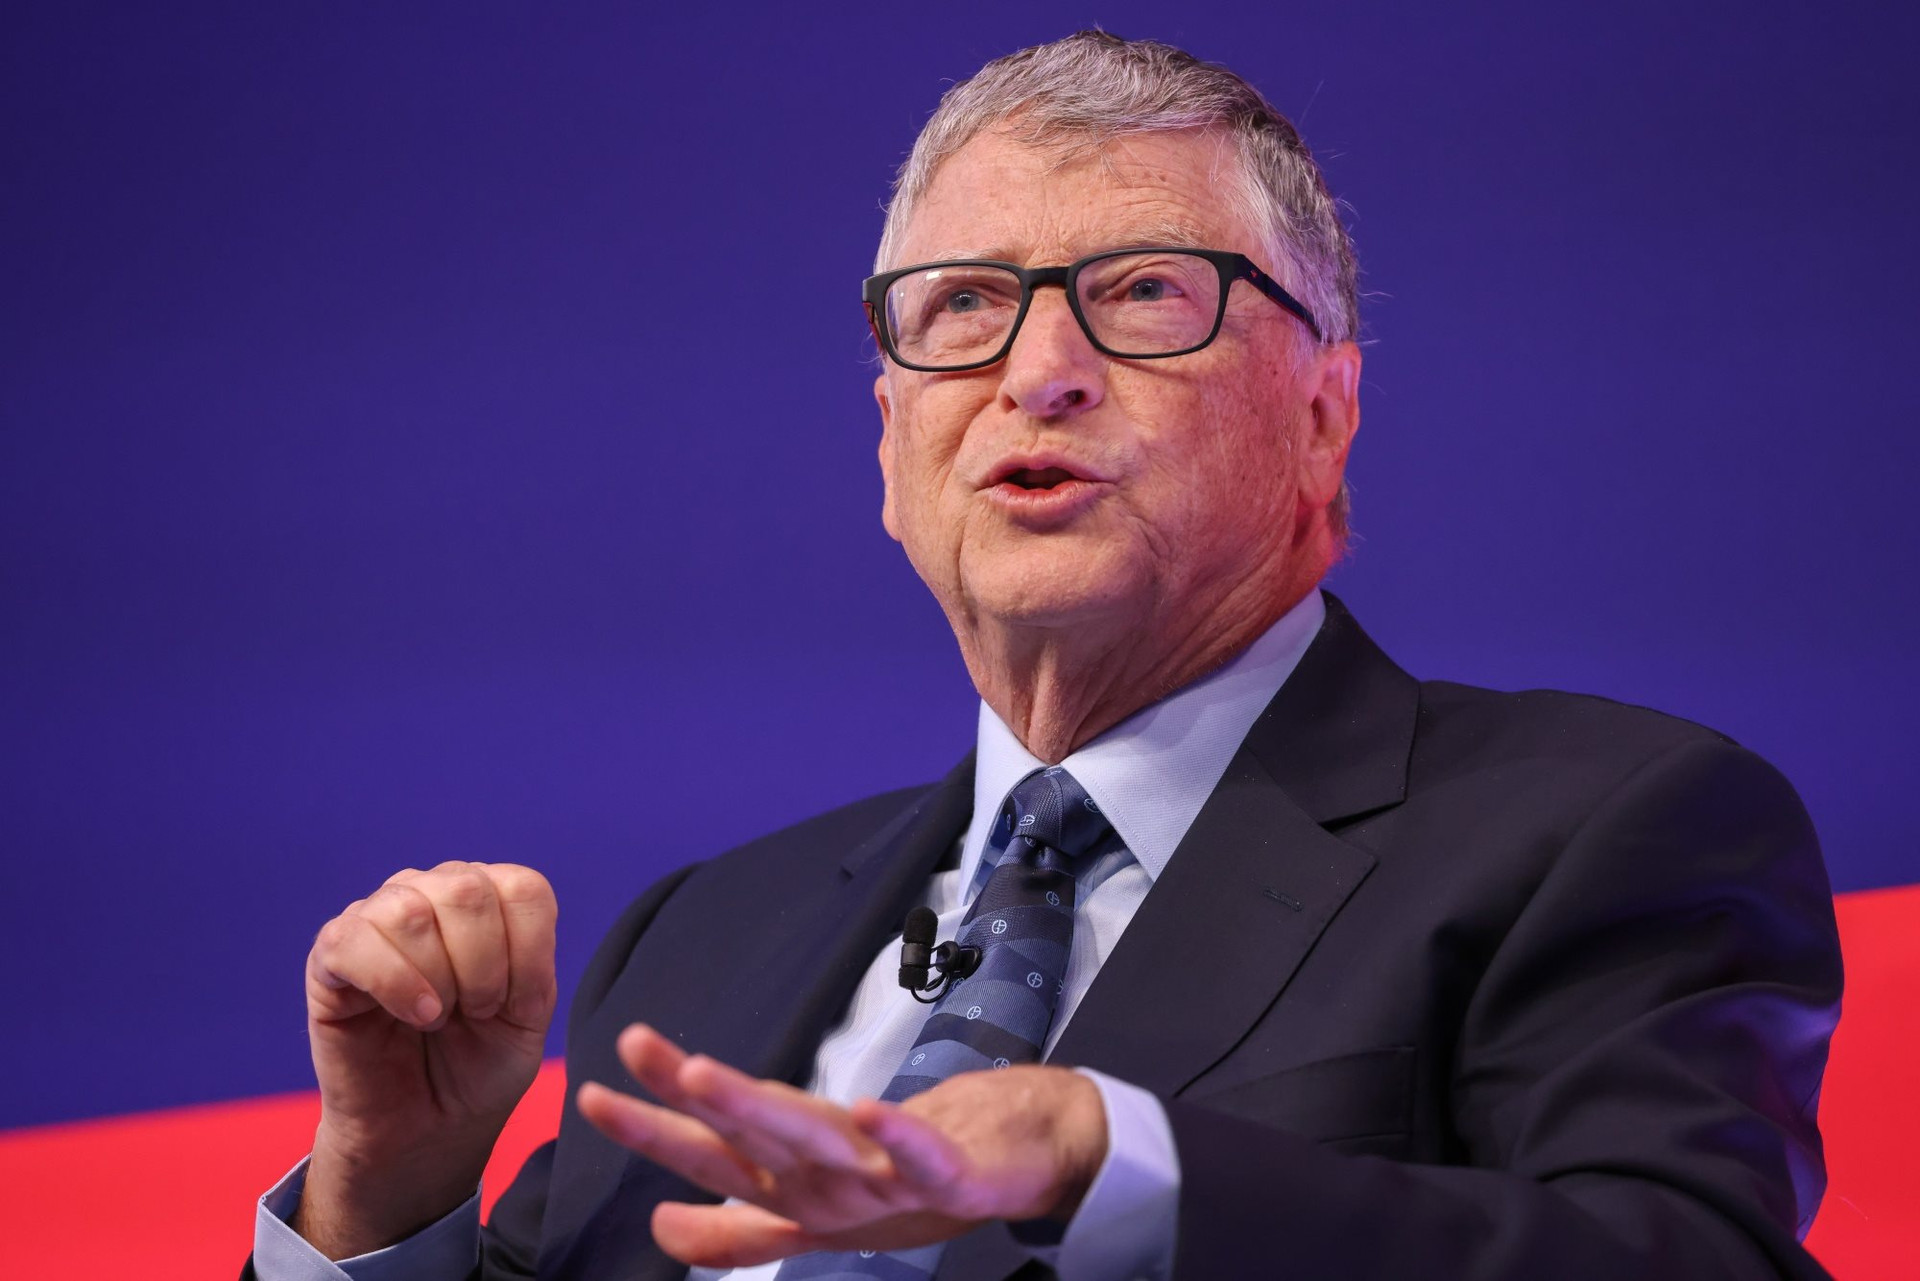 Bill Gates: Còn trẻ hãy cứ hưởng thụ đi, nghỉ ngơi không có nghĩa là lười biếng! - Ảnh 1.